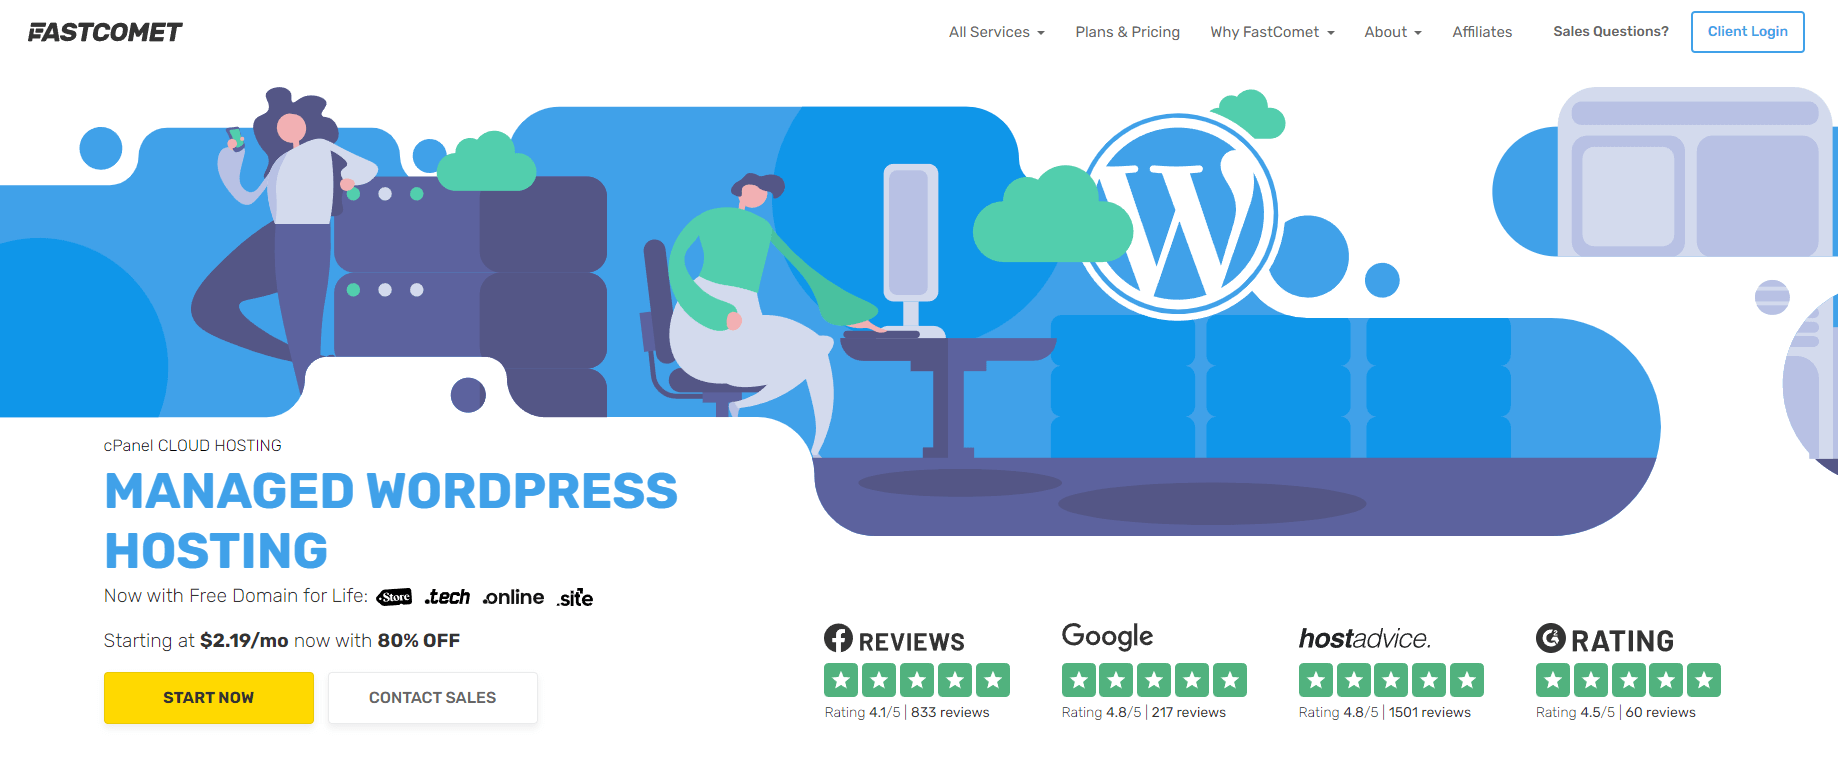 FastComet WordPress hosting page.